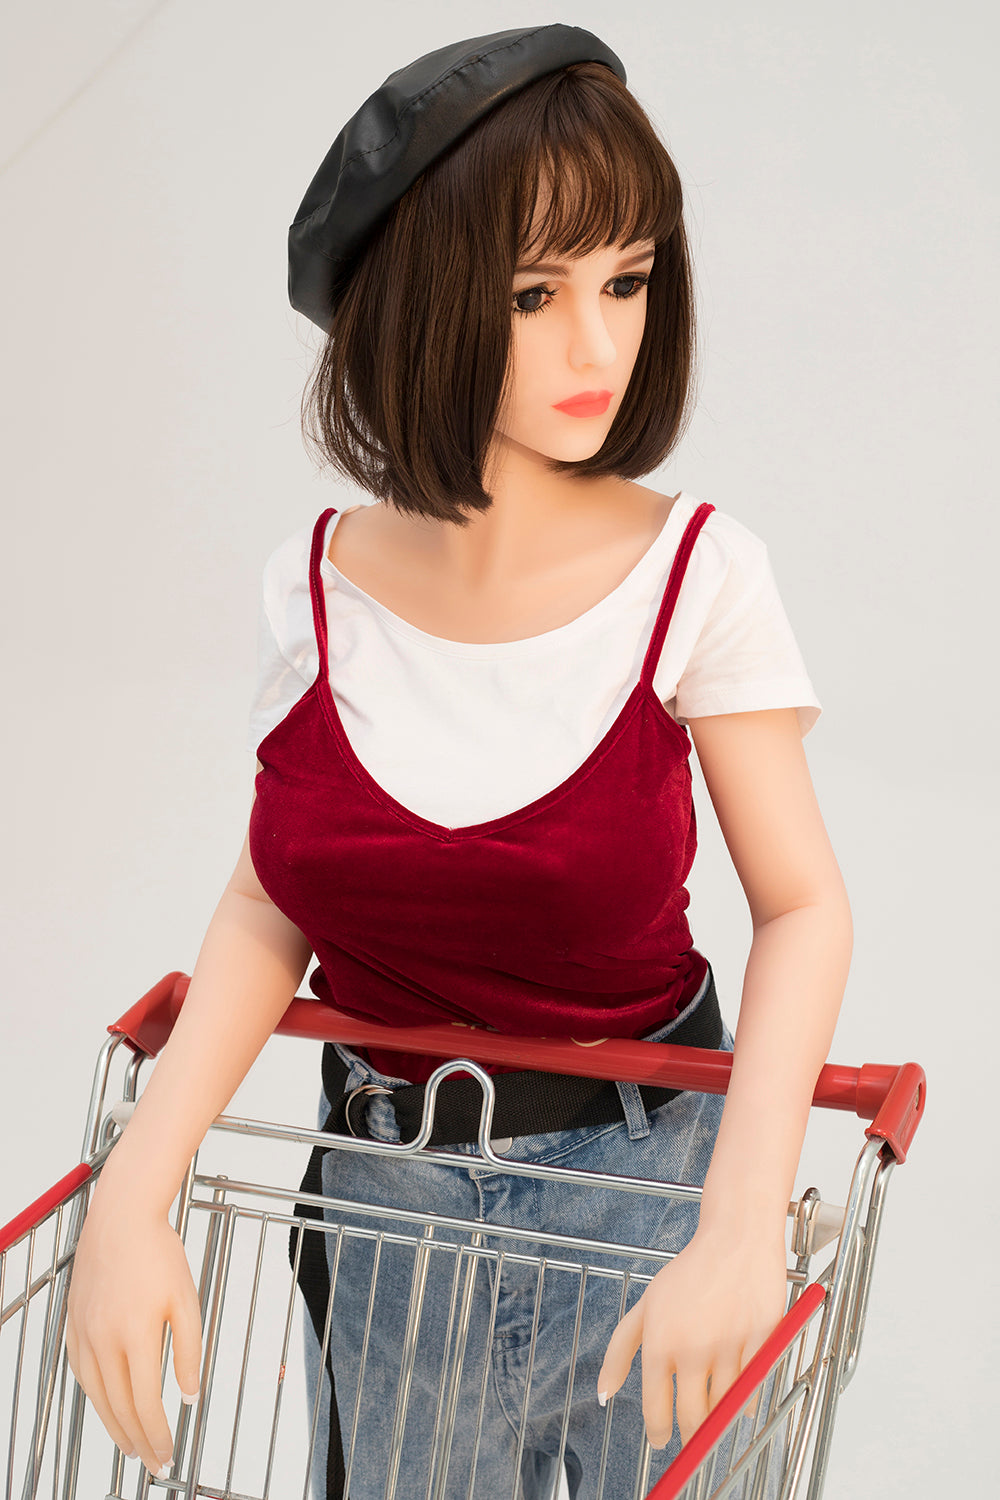 Kingmansion Elaine 140cm 4.59ft Big Boobs Anime Sex Love Doll for Men